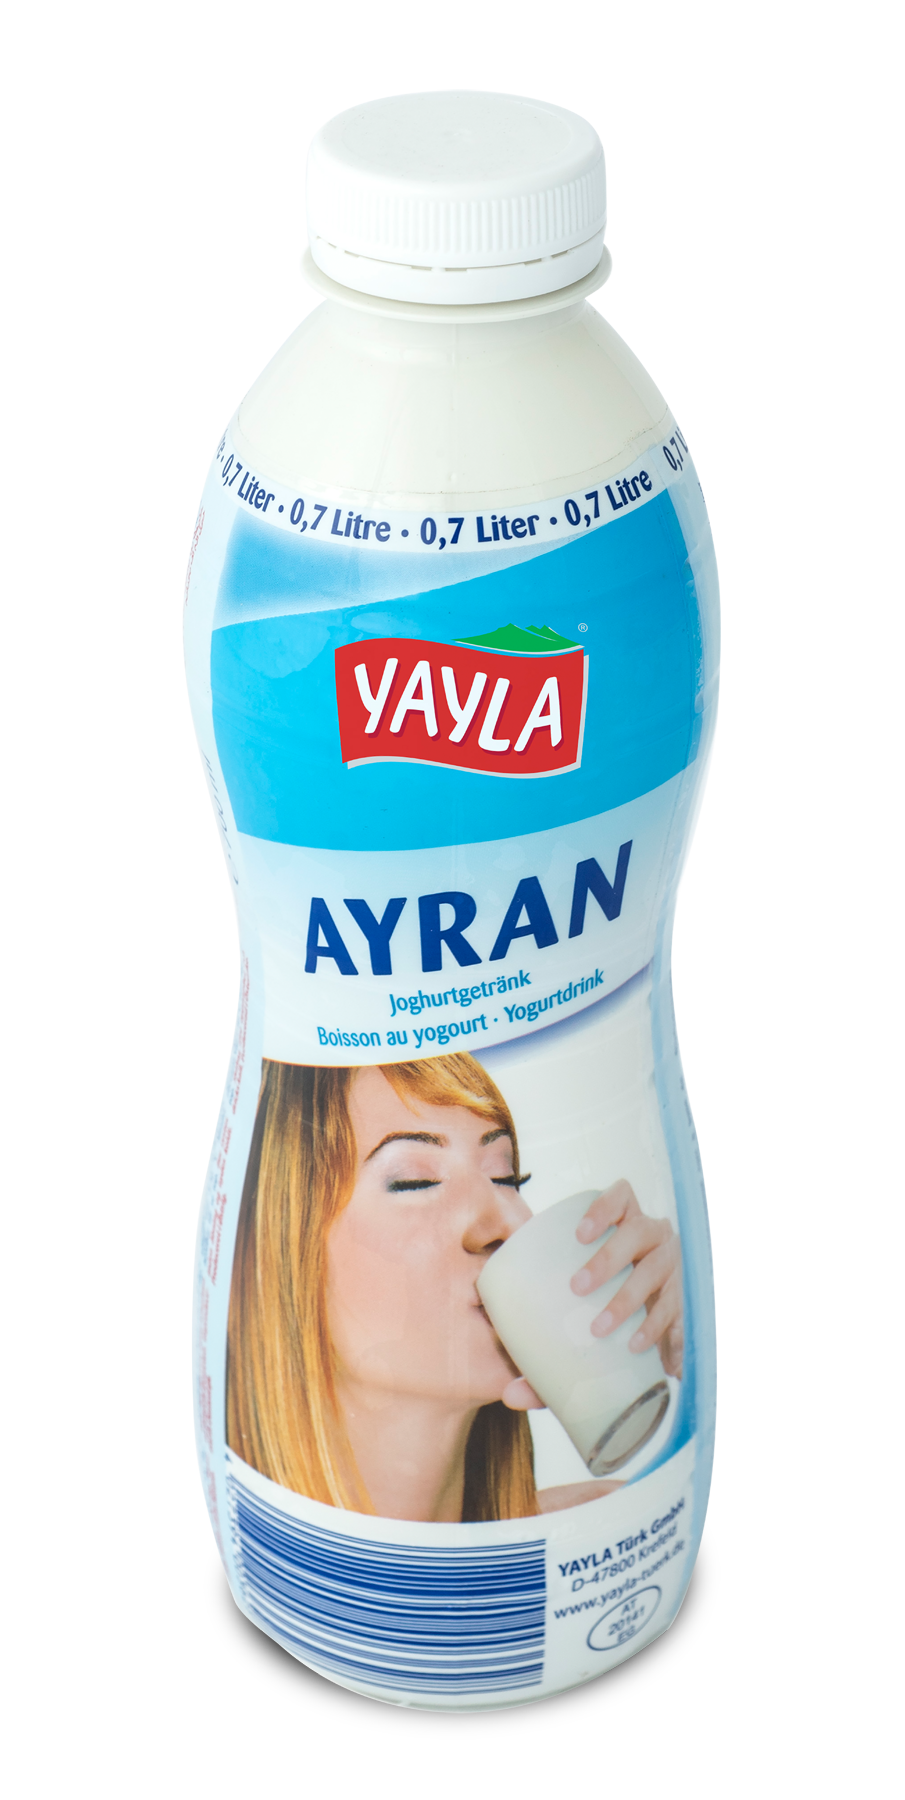 Joghurt-Drink nach türki­scher Art